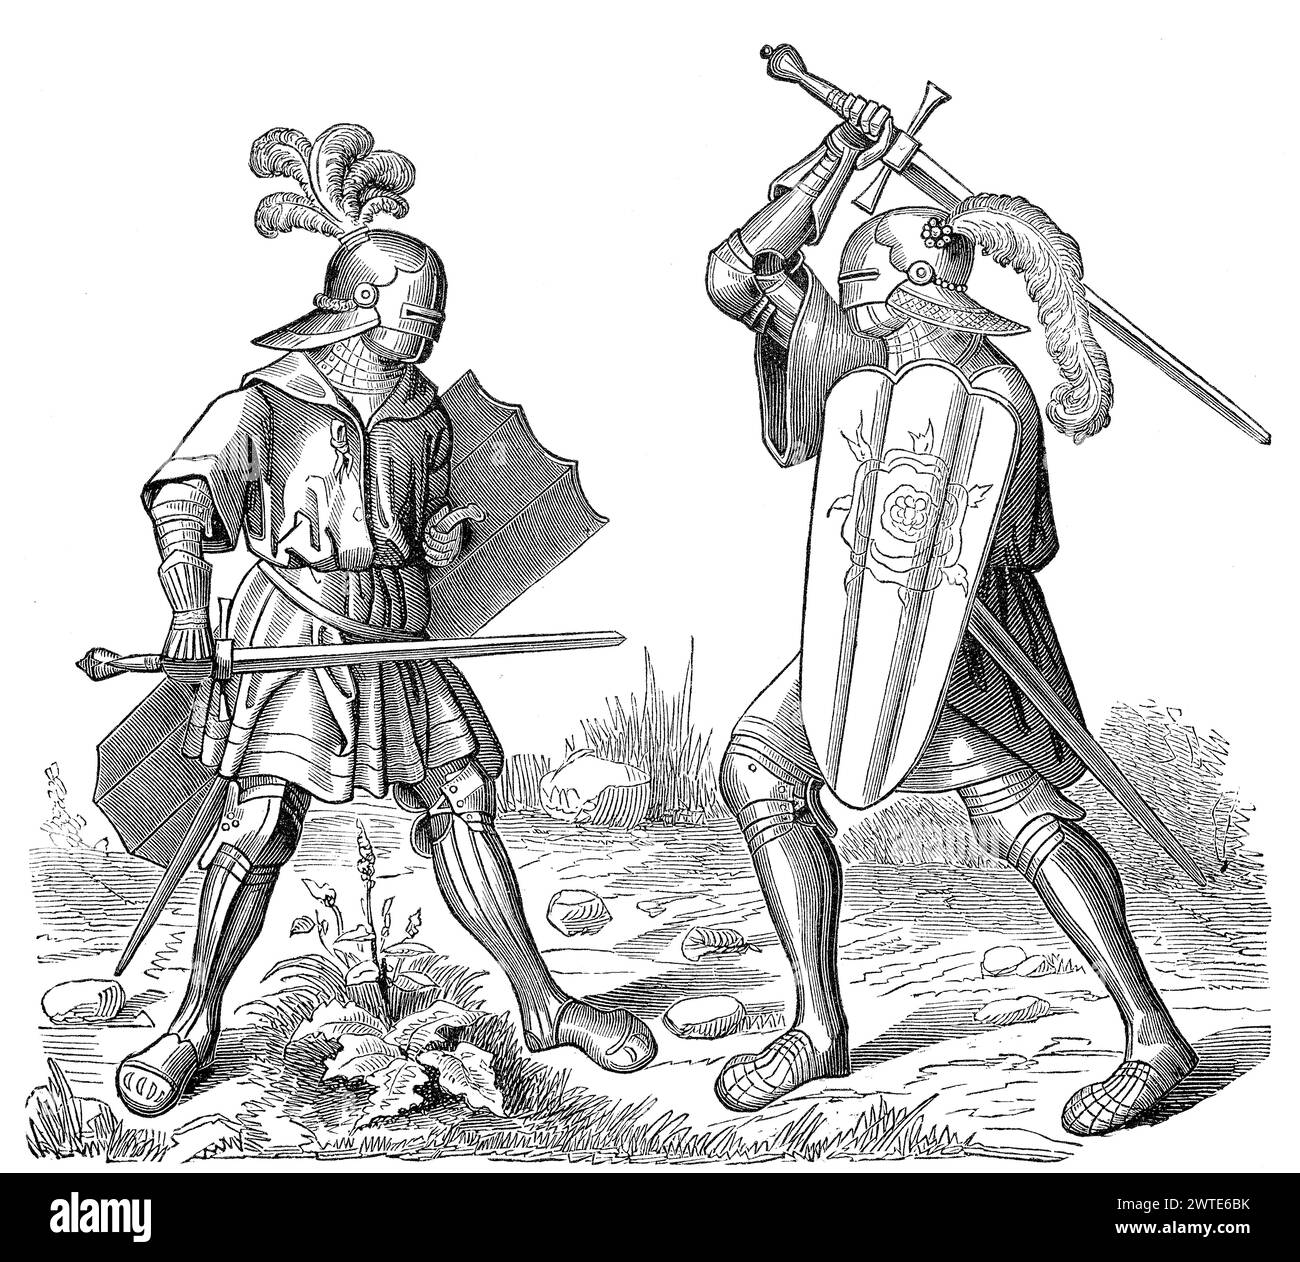 Ein einziger Kampf, kämpfende Ritter in Rüstung, 15. Jahrhundert Stockfoto